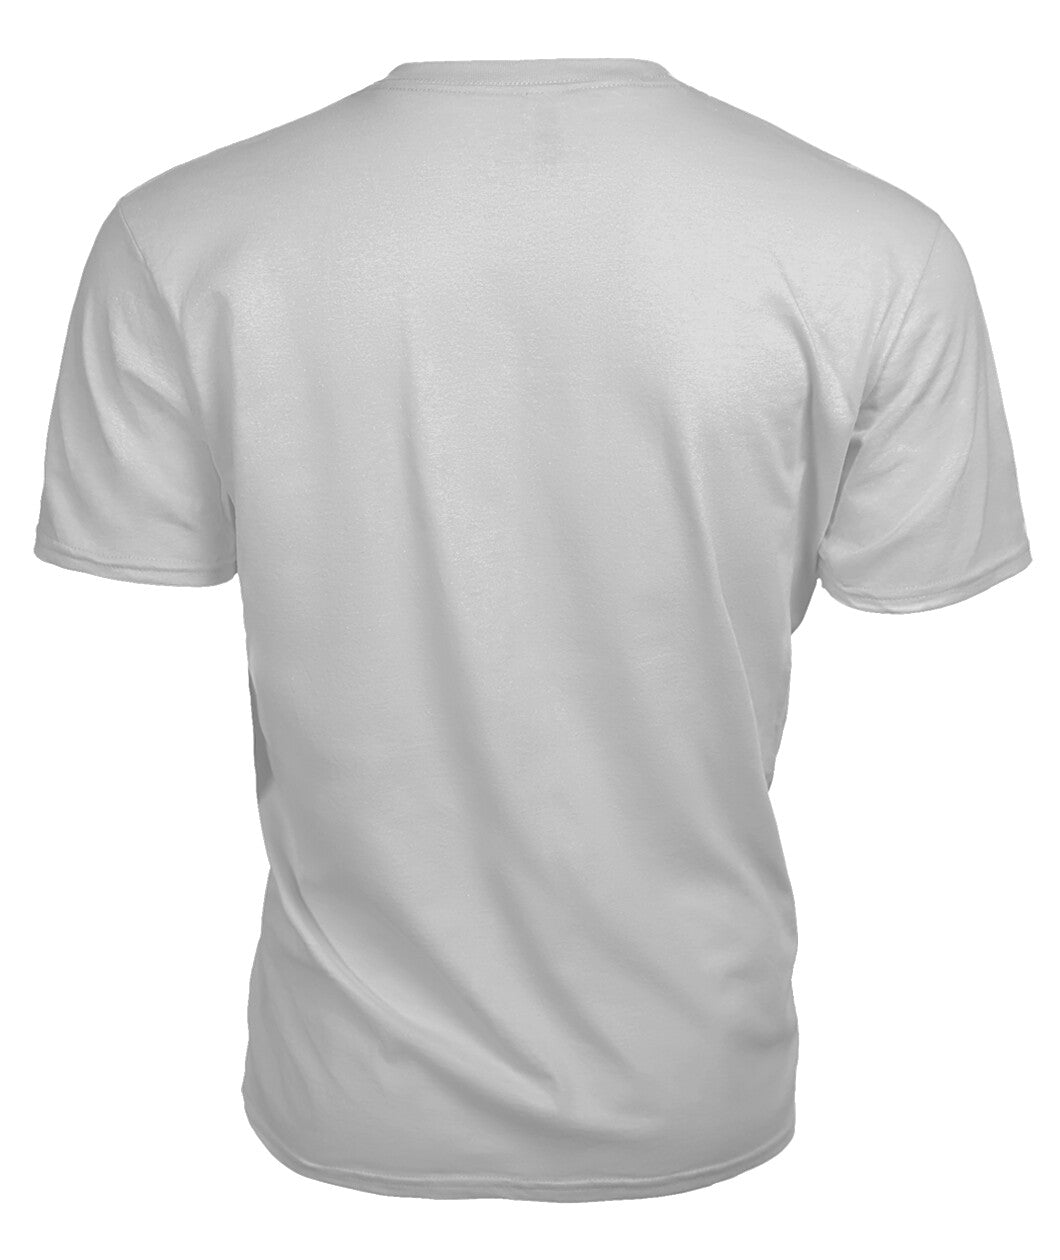 Baird Family Tartan 2D T-Shirt